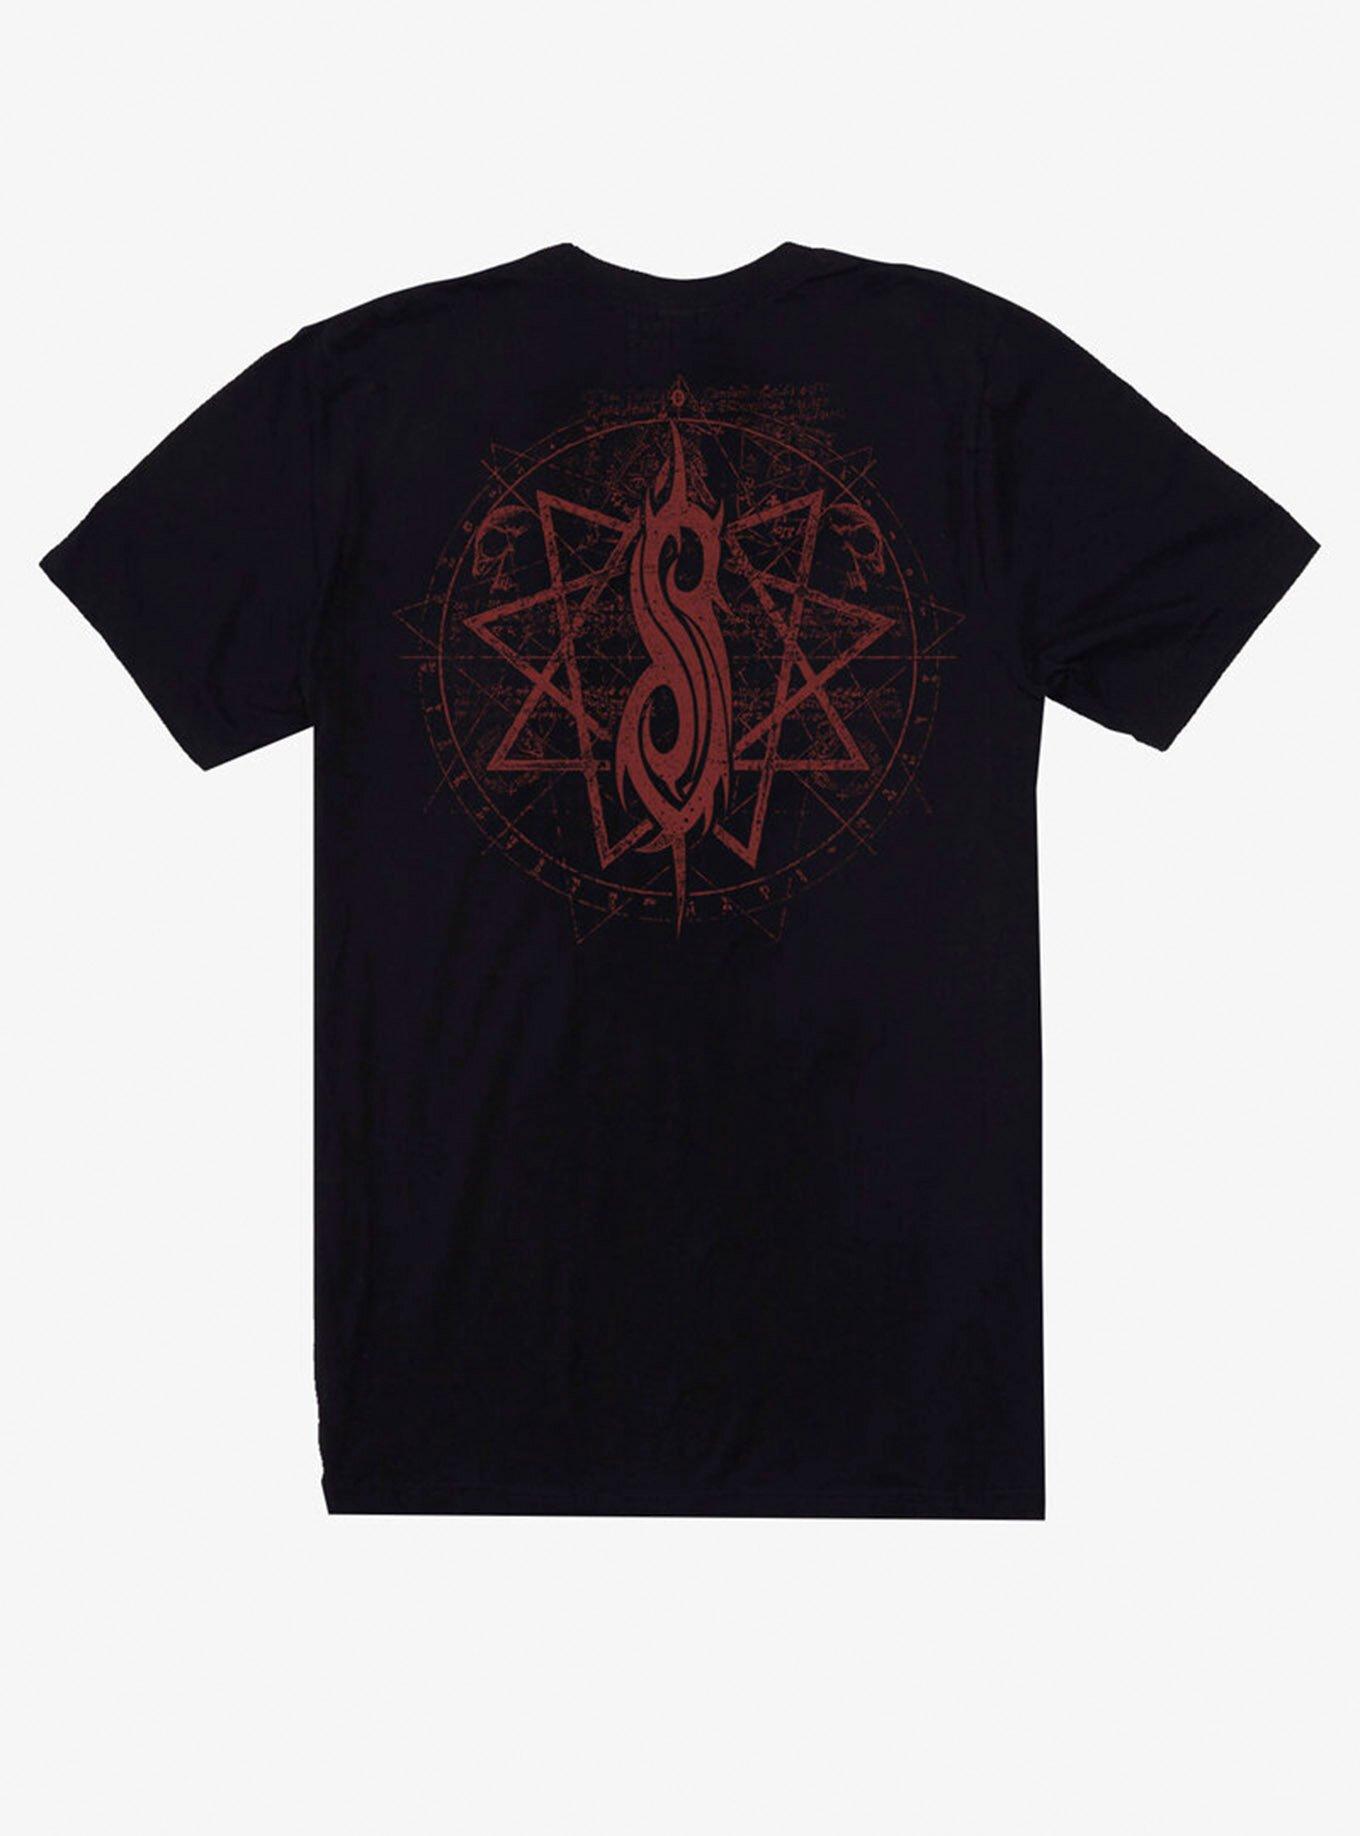 Slipknot Reaper T-Shirt, BLACK, alternate